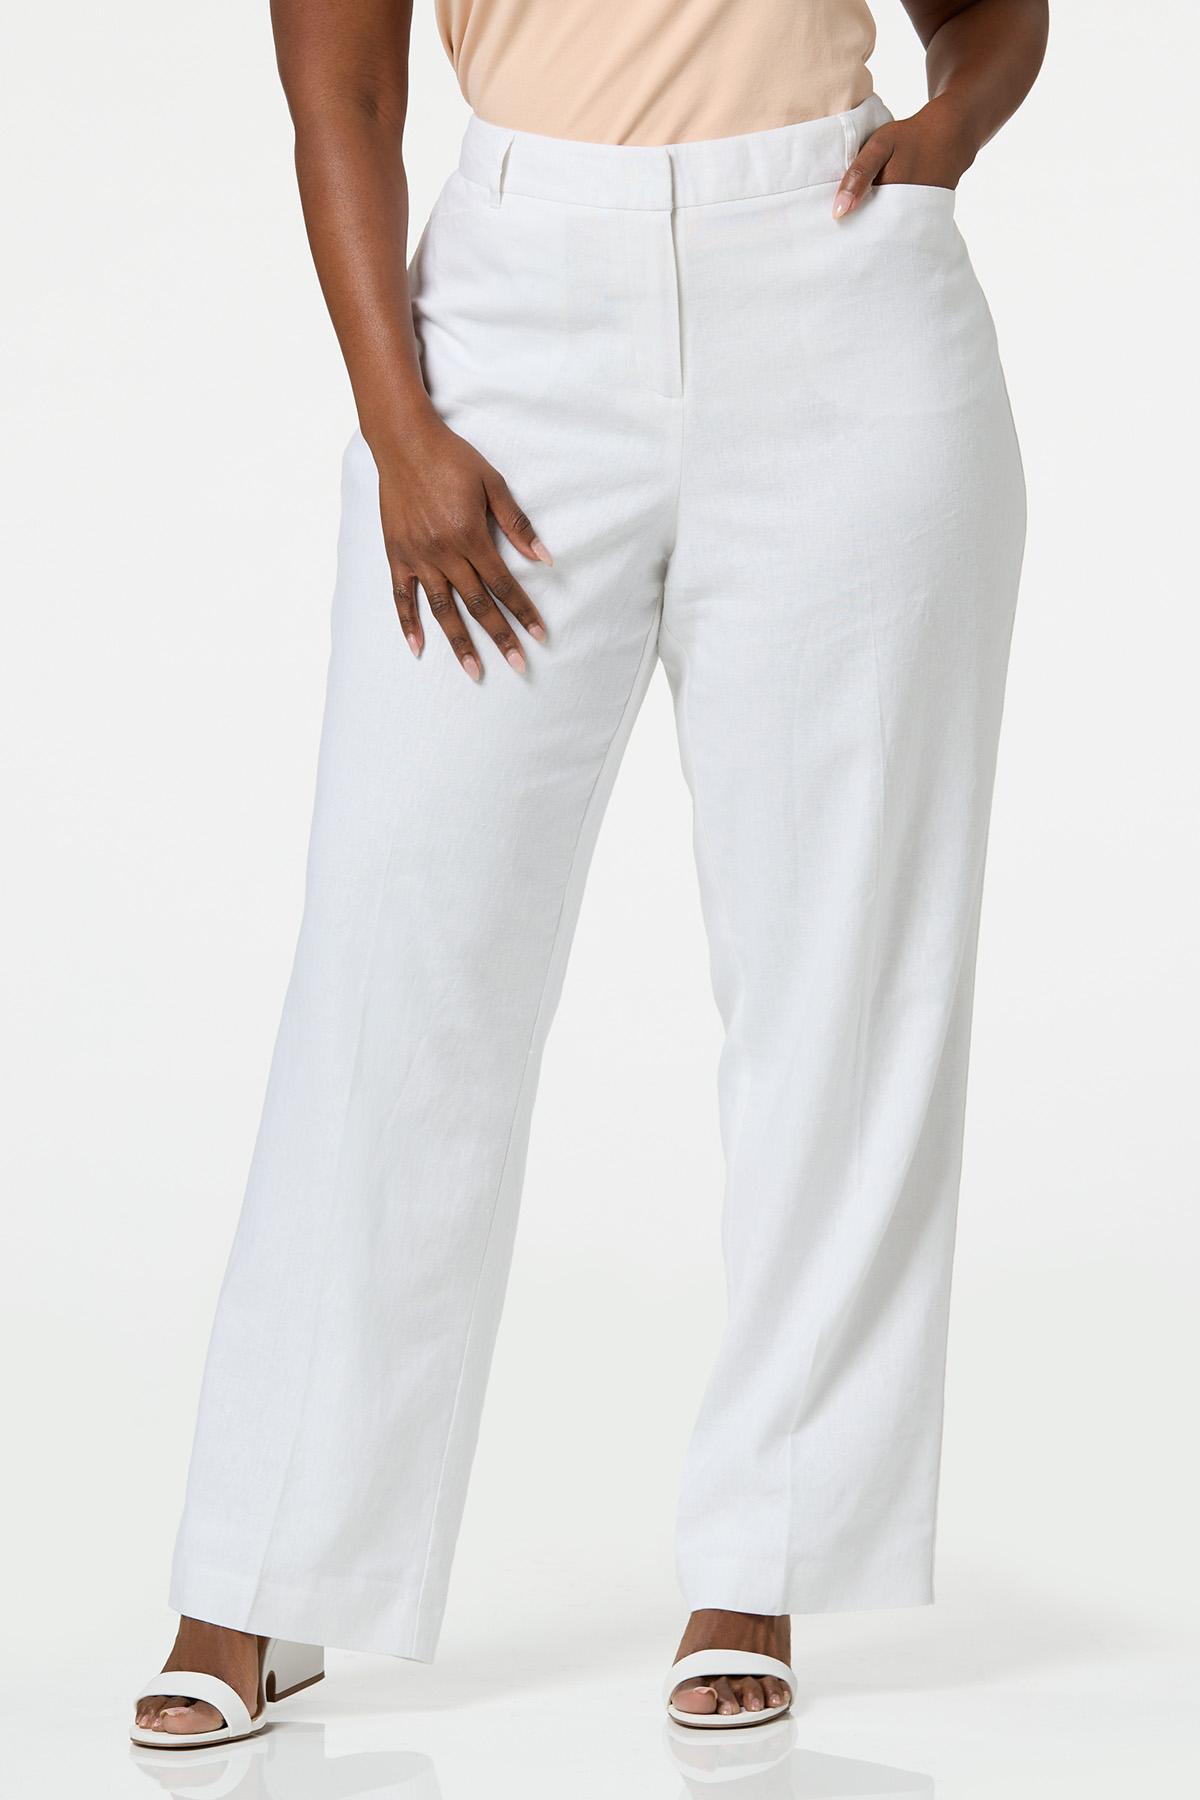 Cato Fashions  Cato Plus Size White Linen Trousers